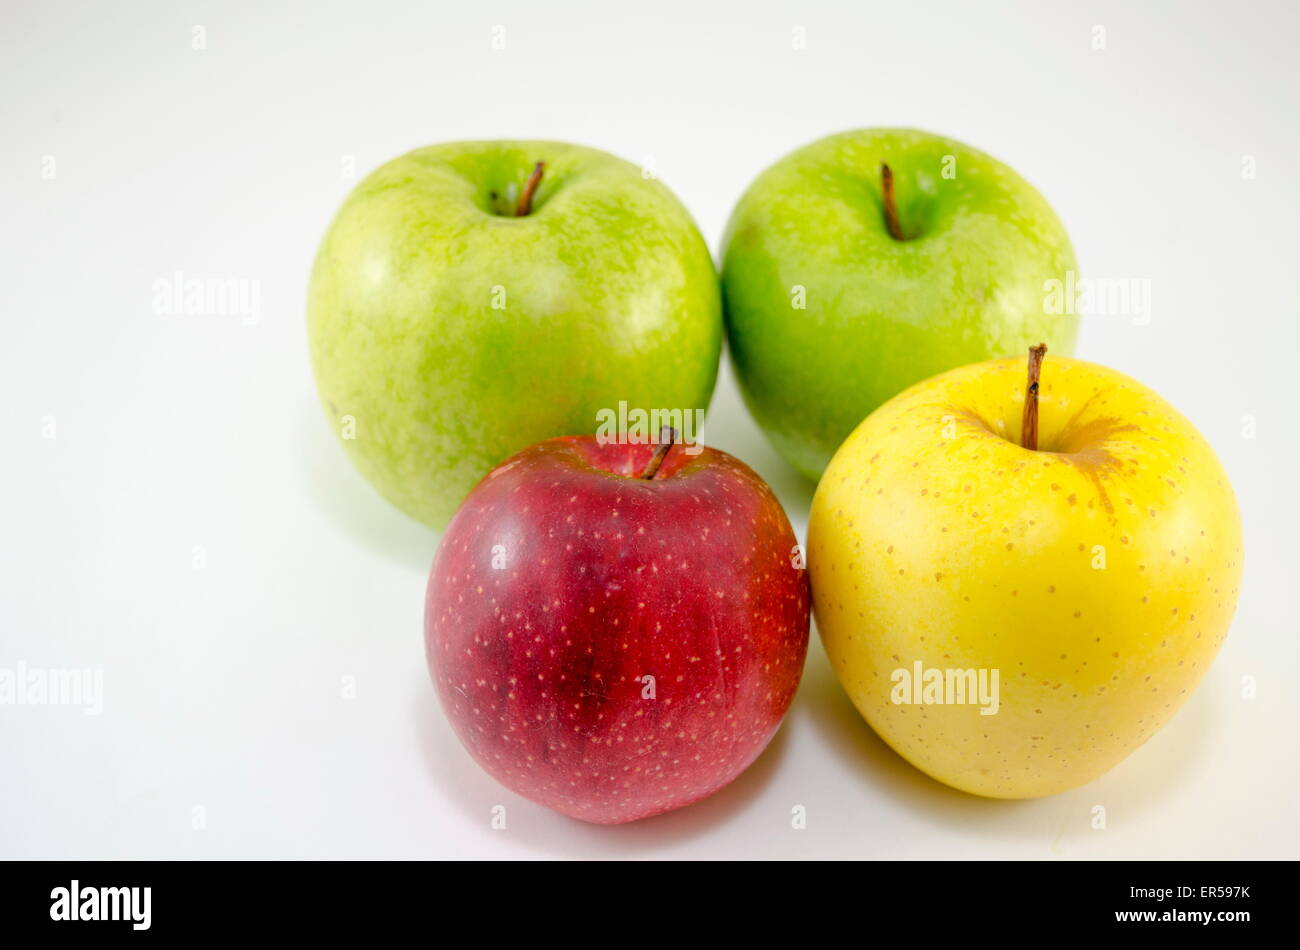 https://c8.alamy.com/comp/ER597K/yellow-red-and-green-apples-arranged-together-ER597K.jpg